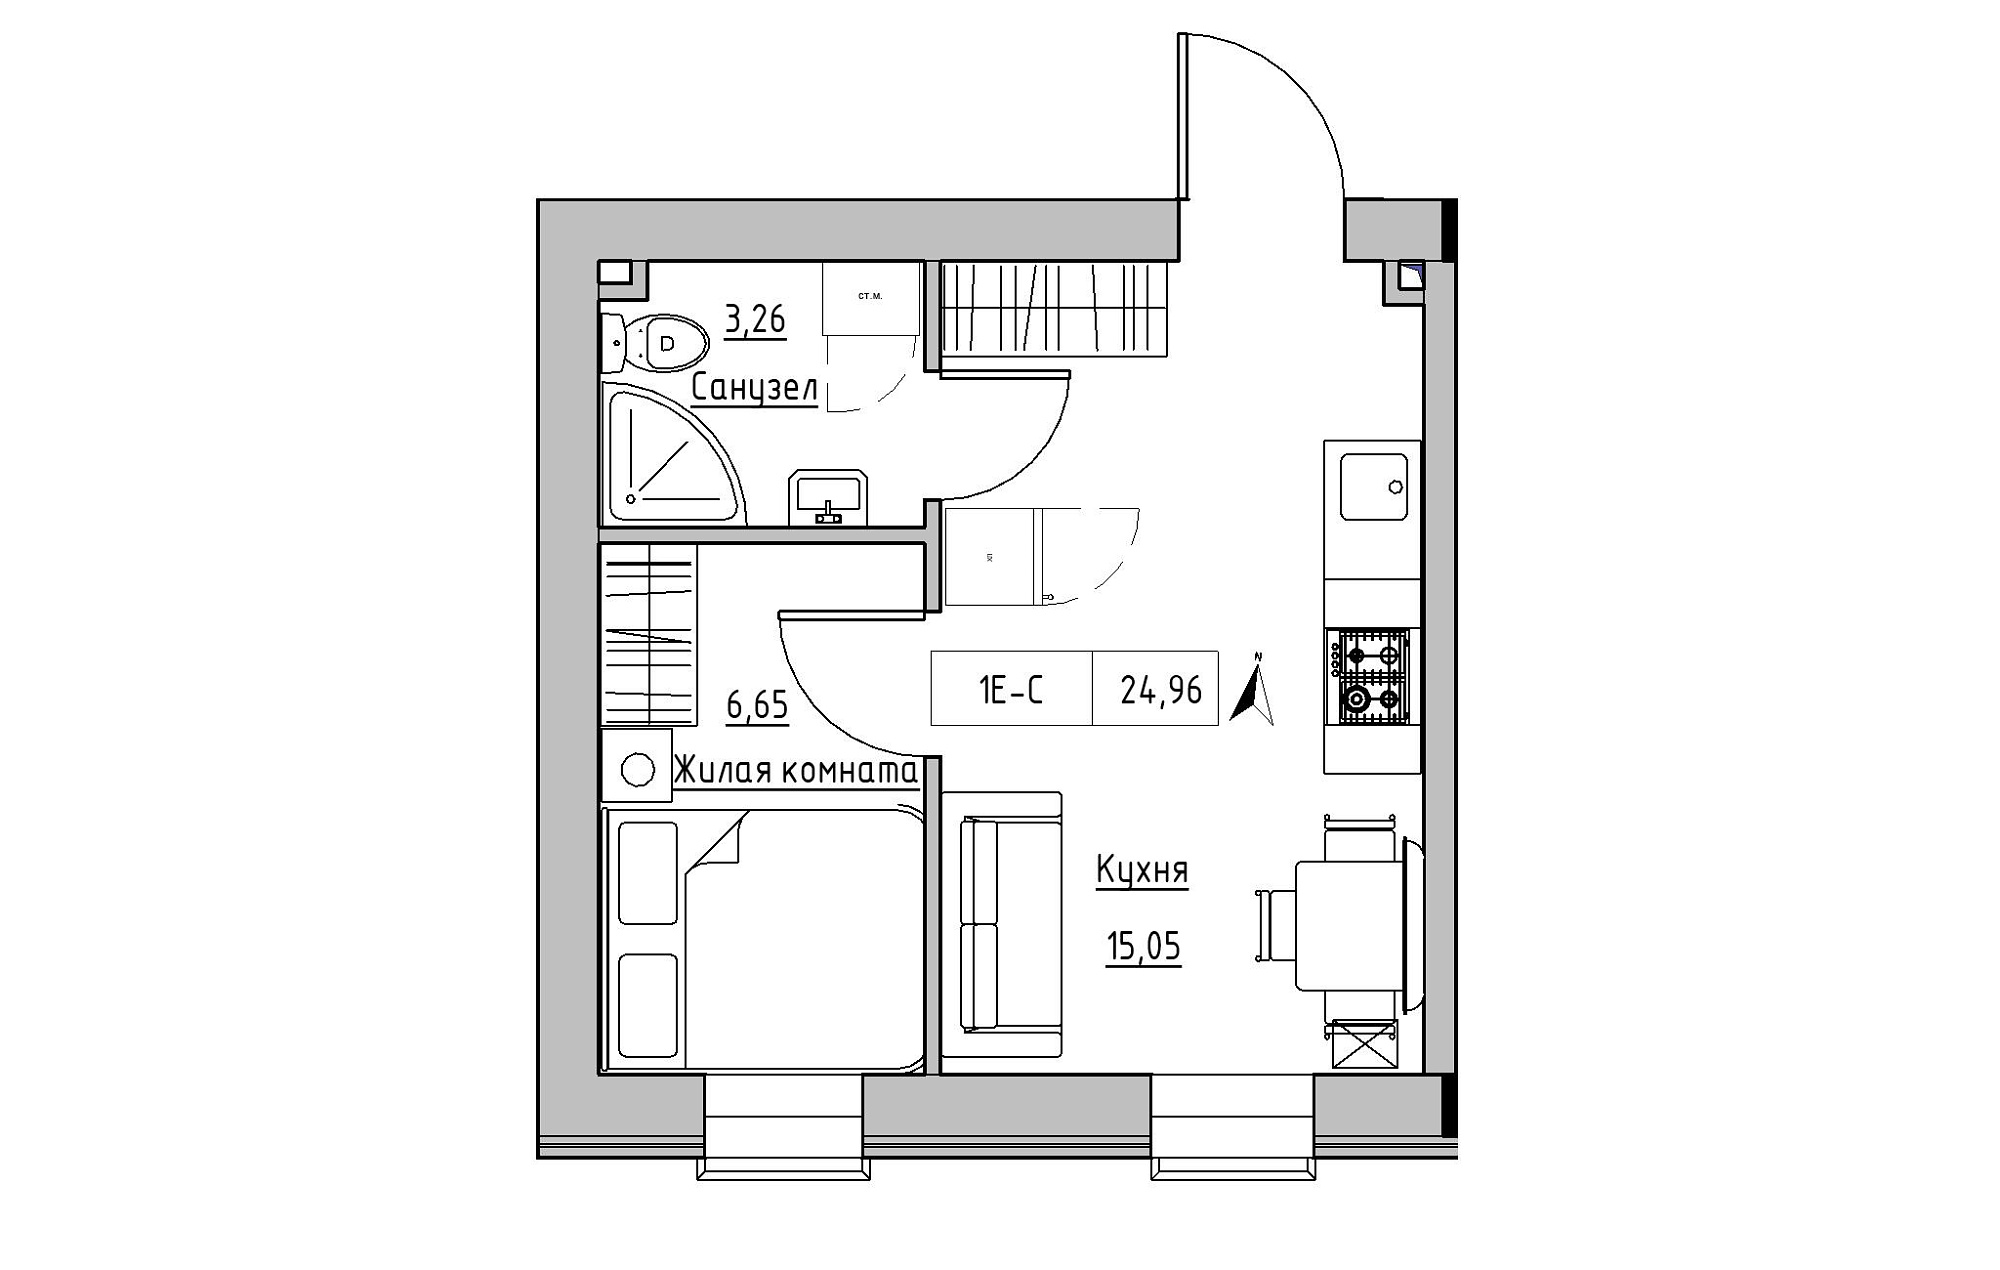 Планування 1-к квартира площею 24.96м2, KS-019-05/0015.